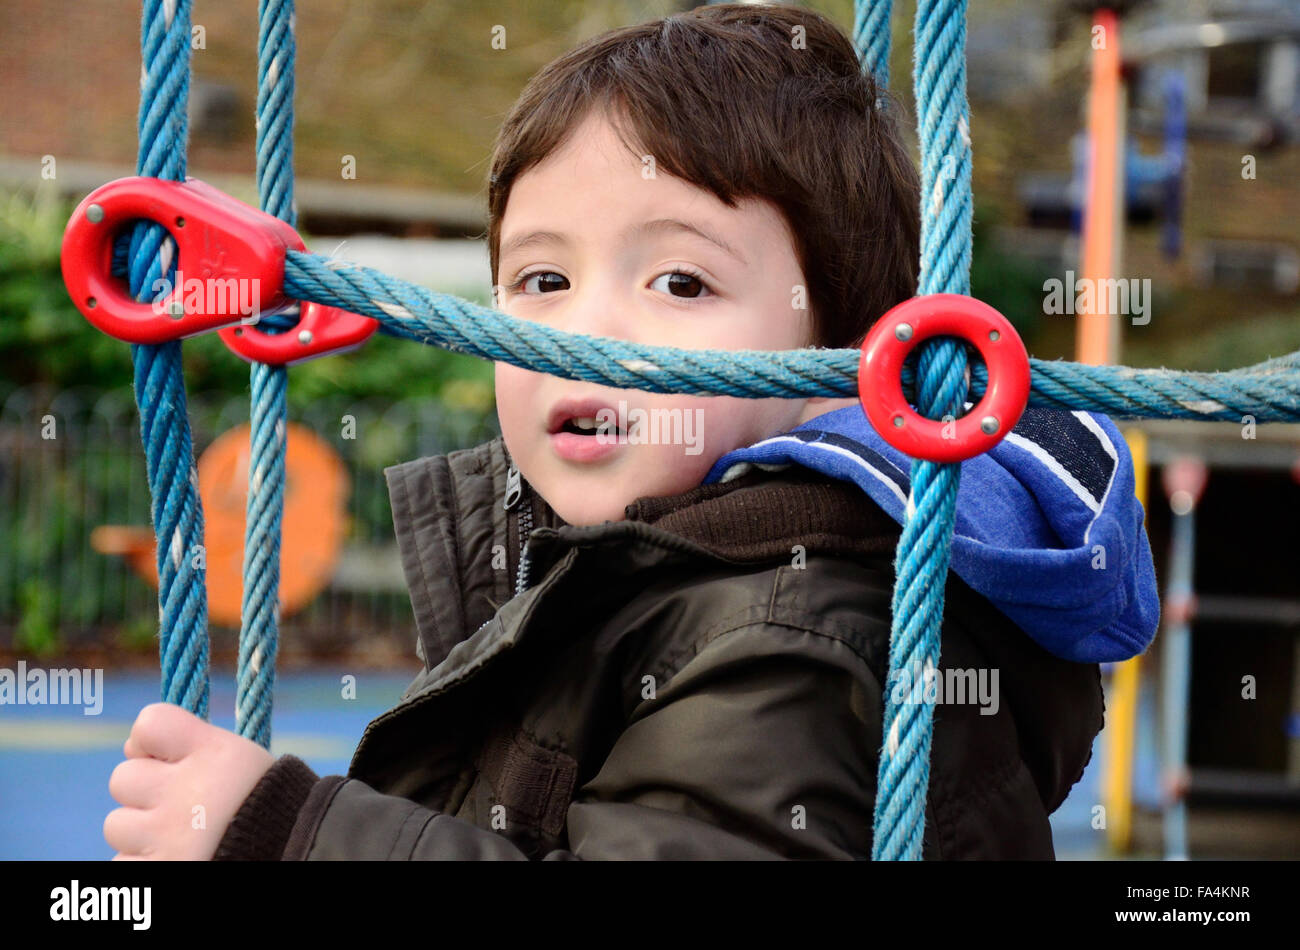 Un jeune garçon jouant sur un filet qui fait partie d'une escalade dans une aire de jeux pour enfants. Banque D'Images